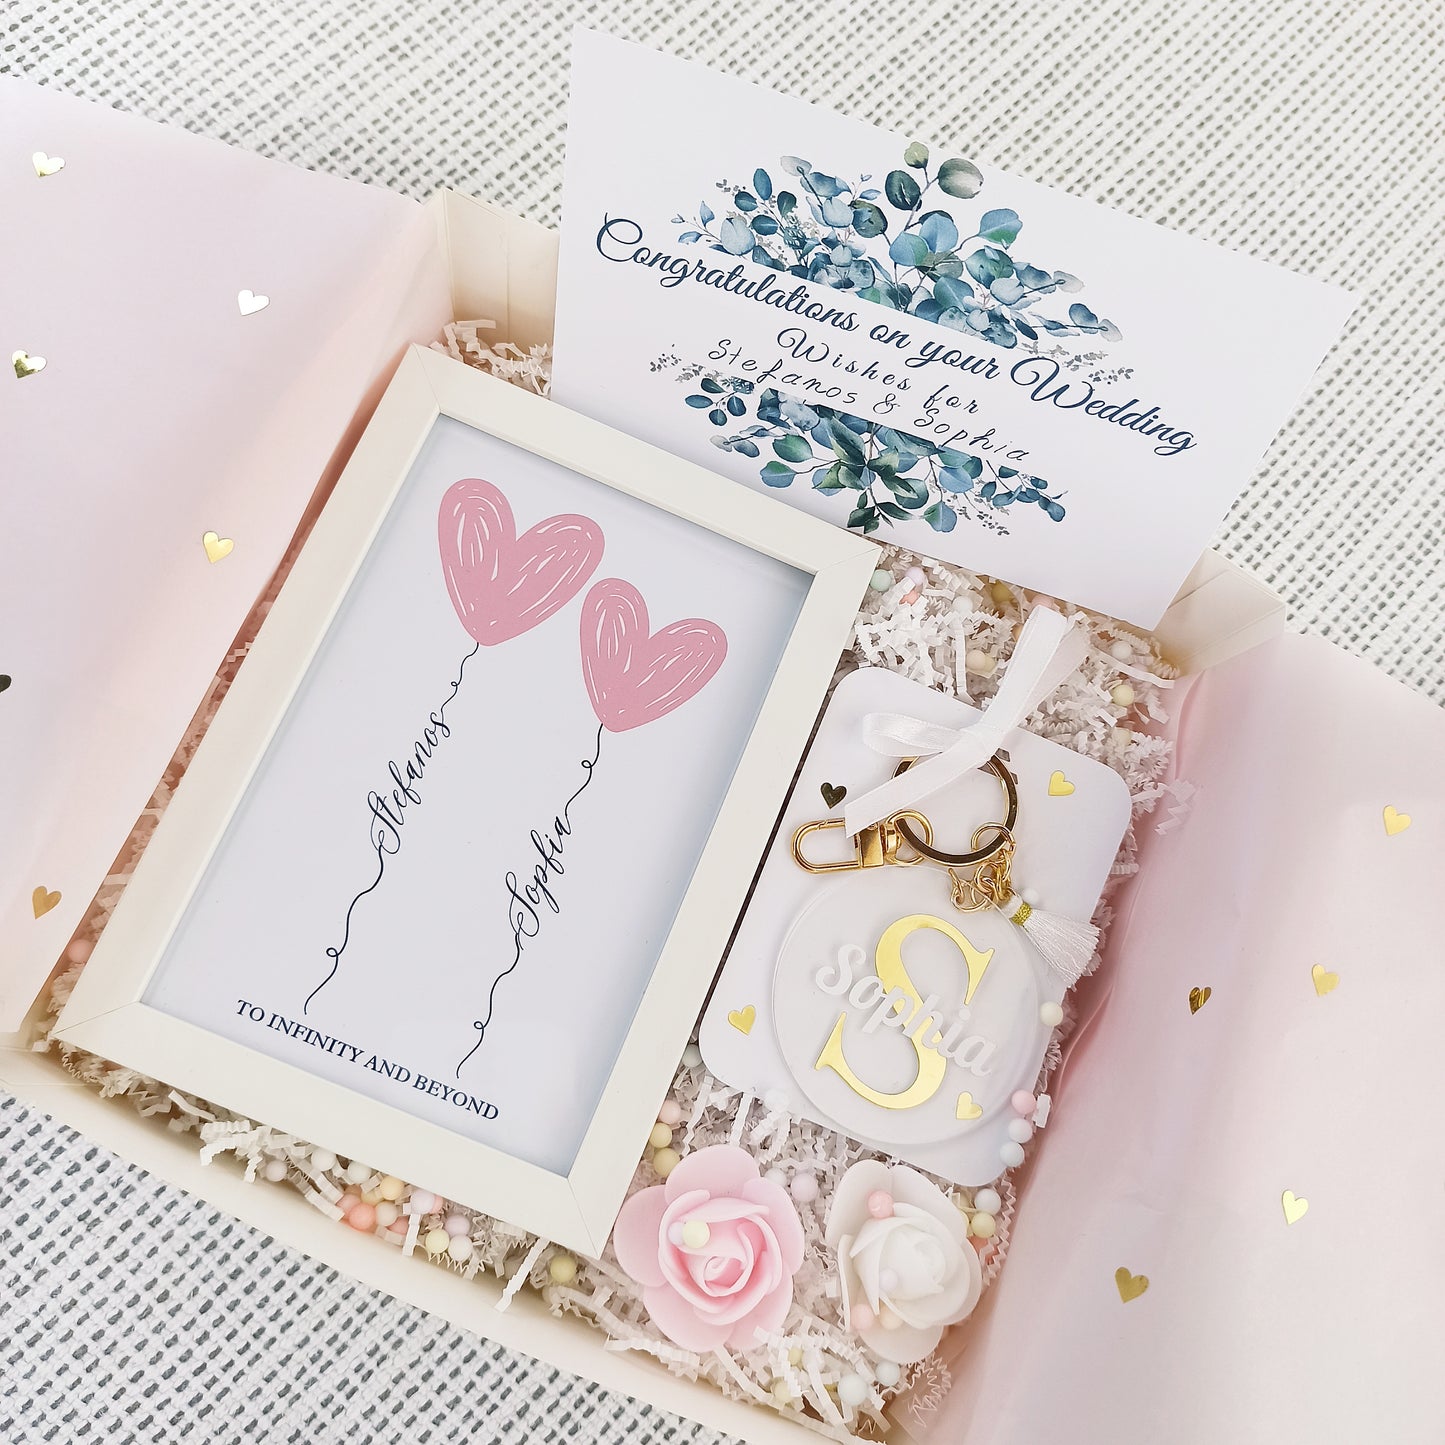 Προσωποποιημένο κουτί δώρου για νύφη που περιλαμβάνει ένα καδράκι με τα ονόματα του ζευγαριού, ένα μπρελόκ με το όνομα της νύφης και μια ευχετήρια κάρτα.